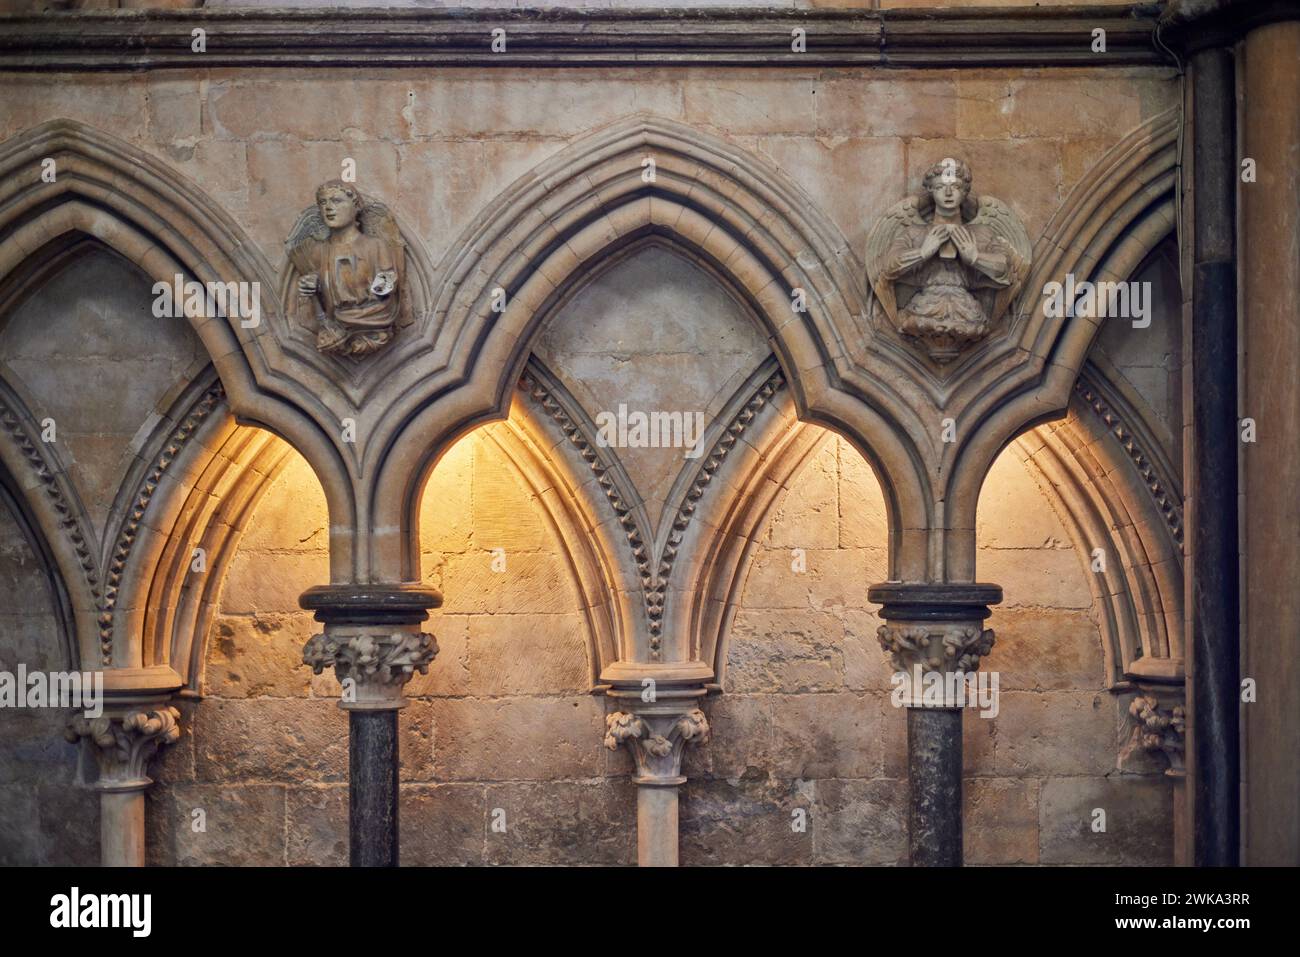 Vari dettagli ad arco all'interno della Cattedrale di Lincoln, Lincoln, Lincolnshire, Inghilterra, Regno Unito Foto Stock